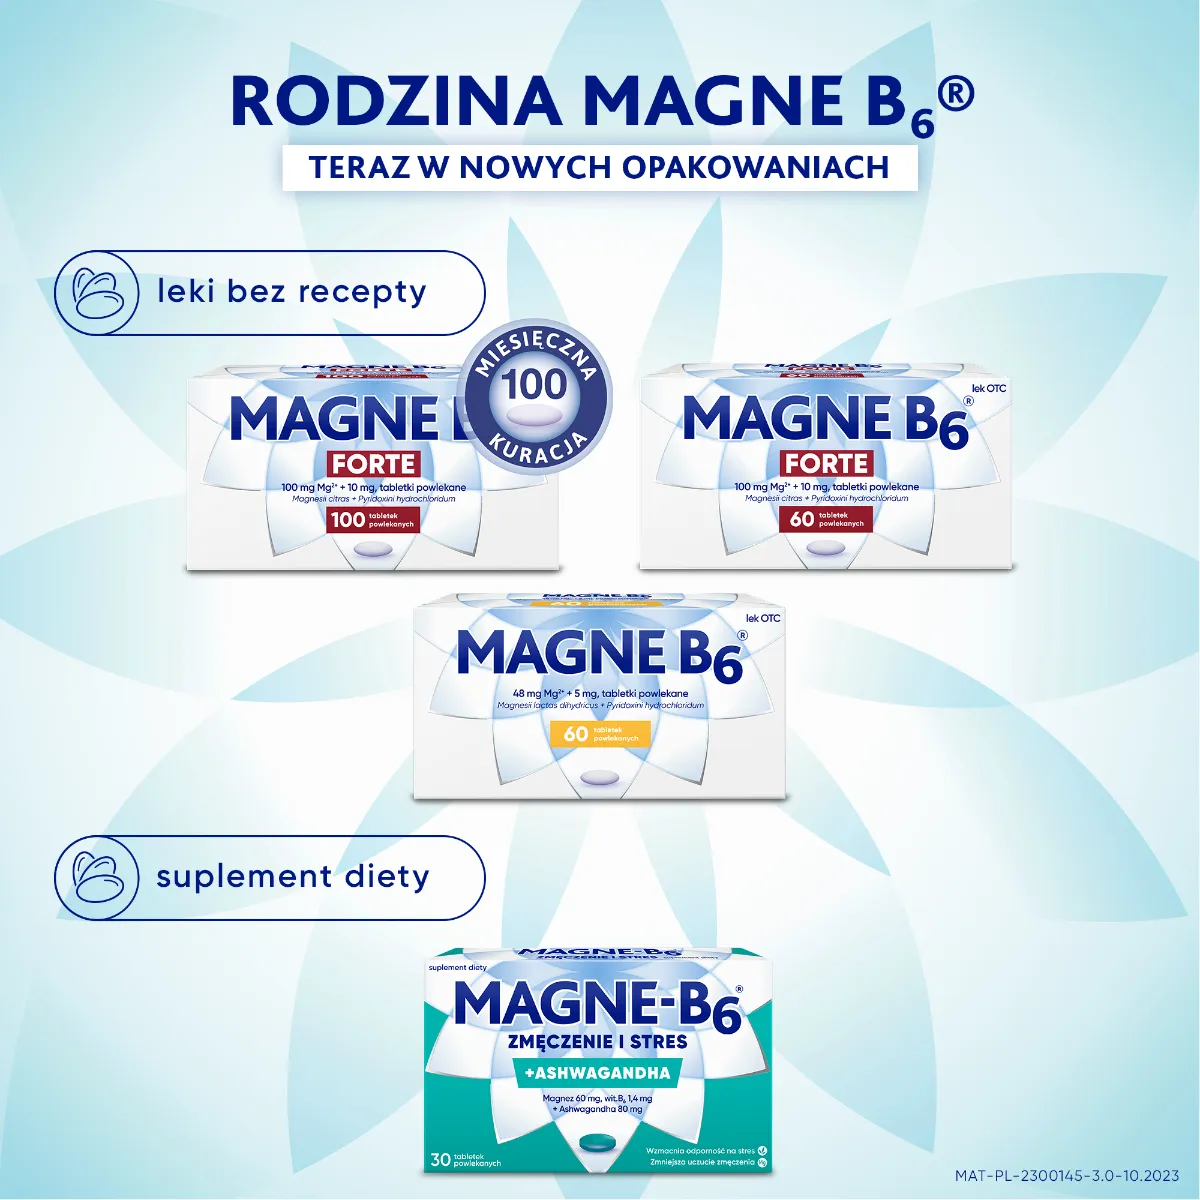 Magne-B6 Zmęczenie i Stres, suplement diety, 30 tabletek powlekanych 